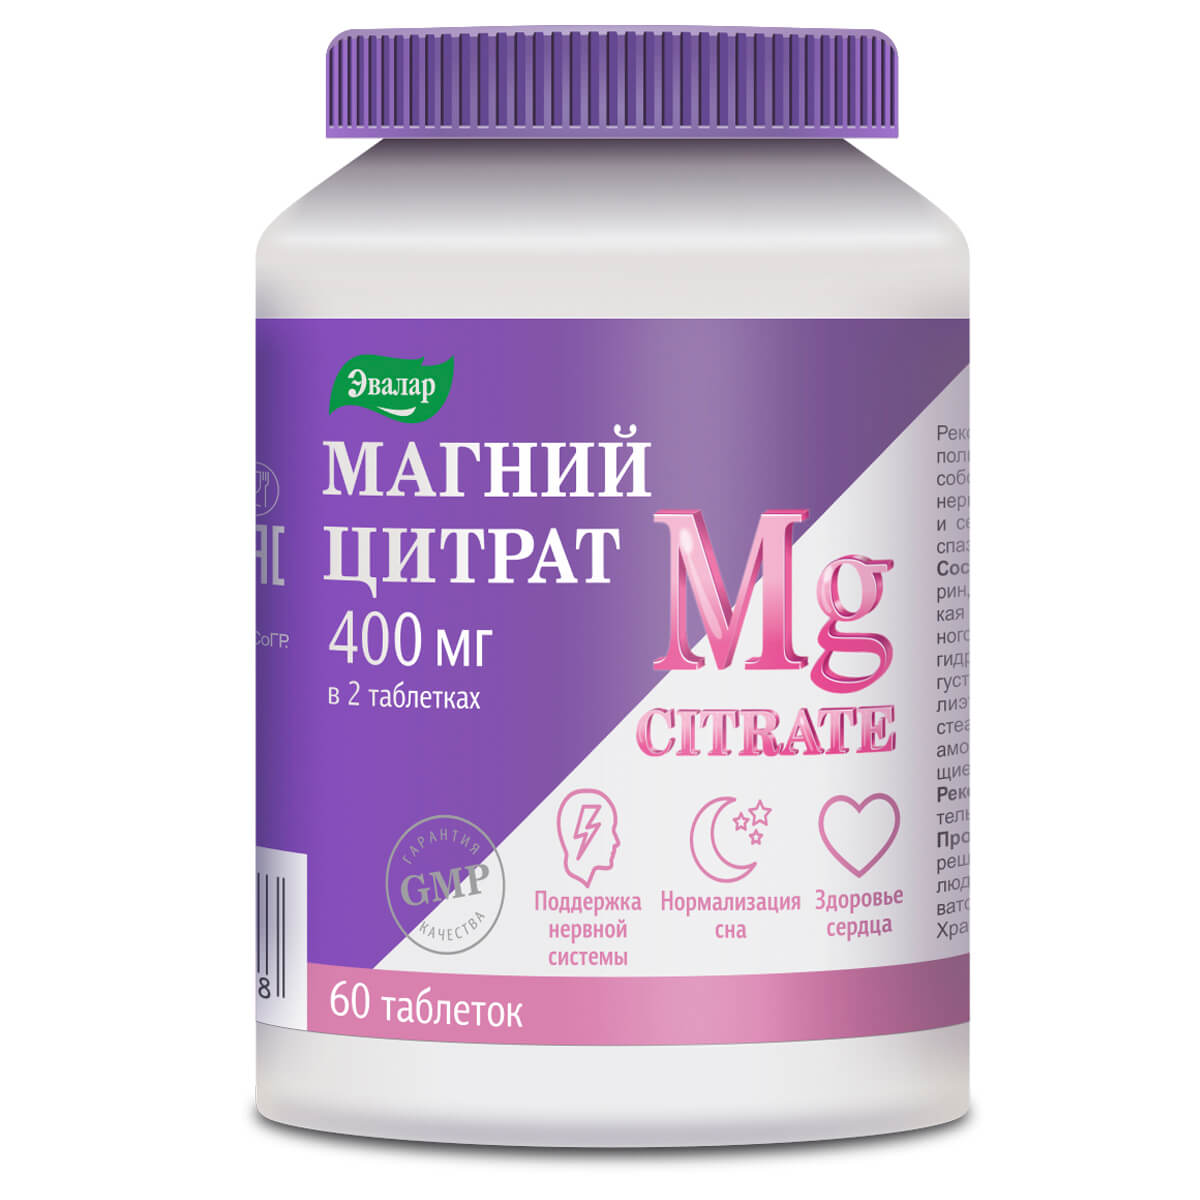 Магний цитрат Эвалар 400 мг таблетки 60 шт. – купить в Москве, цены в интернет-магазинах на Мегамаркет